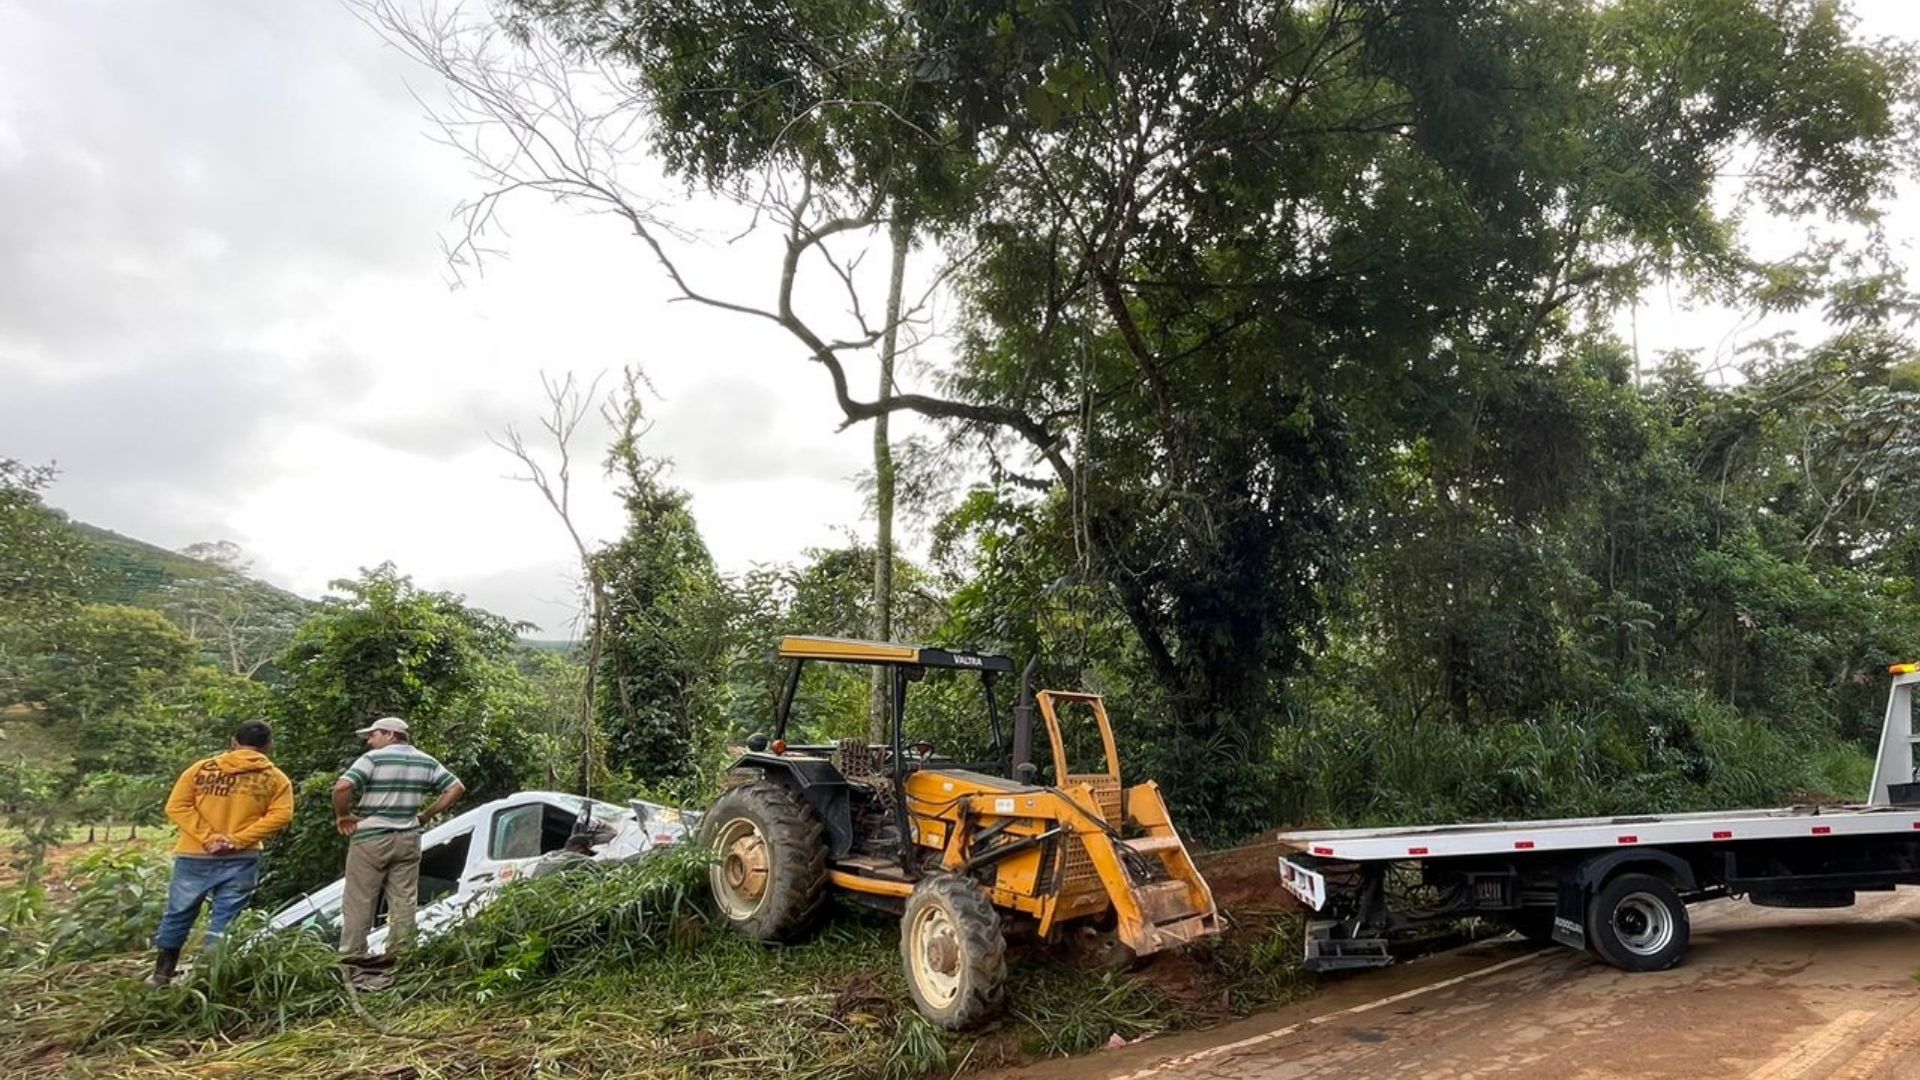 Motorista do veículo que pertence à Prefeitura de Irupi explicou que a via estava escorregadia e por isso perdeu a direção; o incidente ocorreu na manhã desta segunda (29), em Ibitirama